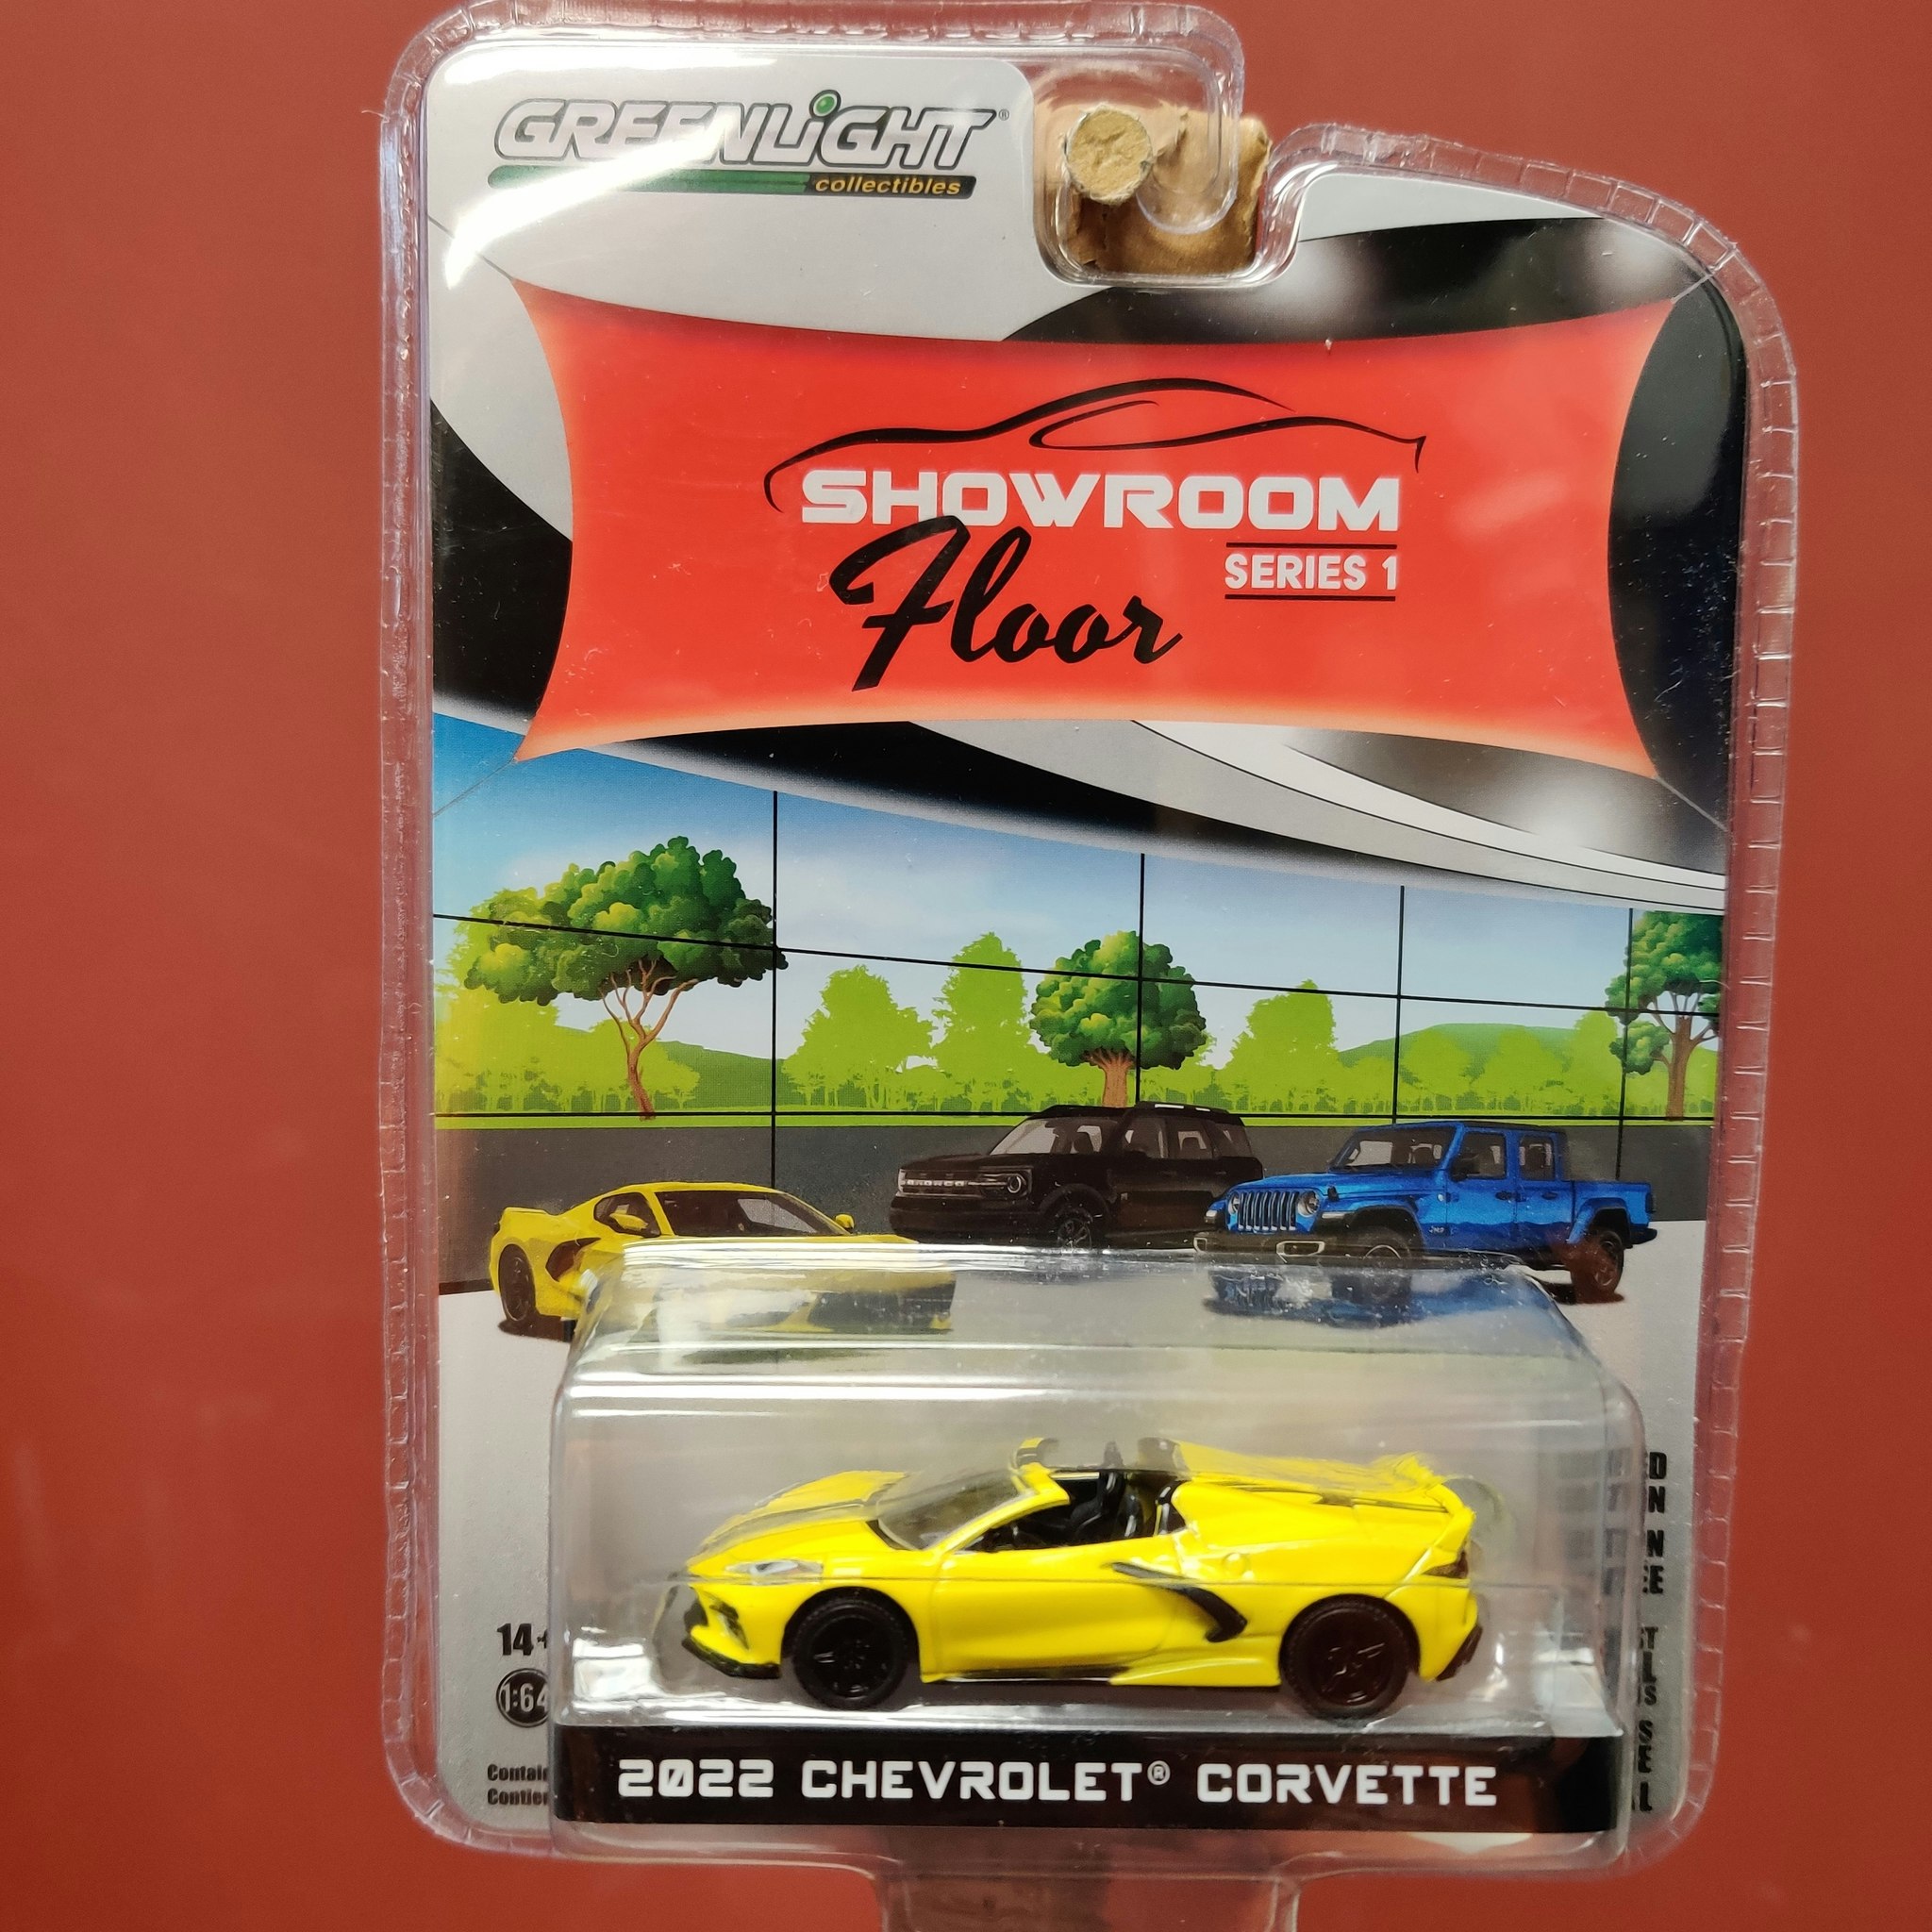 Skala 1/64 Chevrolet Corvette 22' "Showroom Floor" Ser.1 från Greenlight